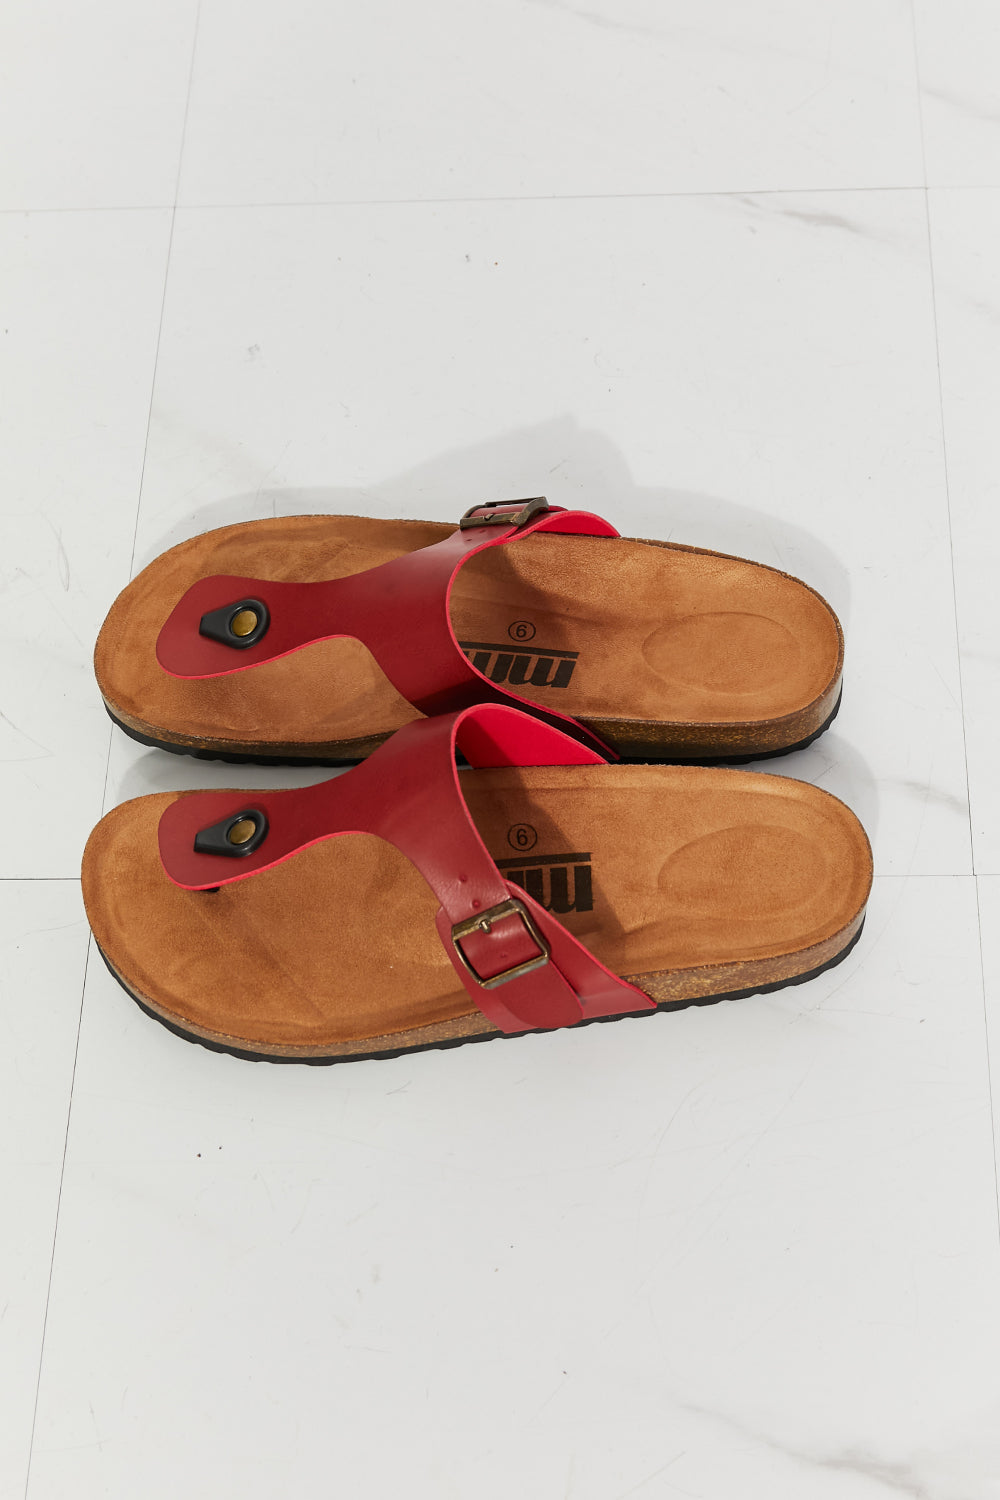 MMShoes T-Strap Flip-Flop Slide On Flat Cork Footbed Comfort Sandals in Wine Drift Away